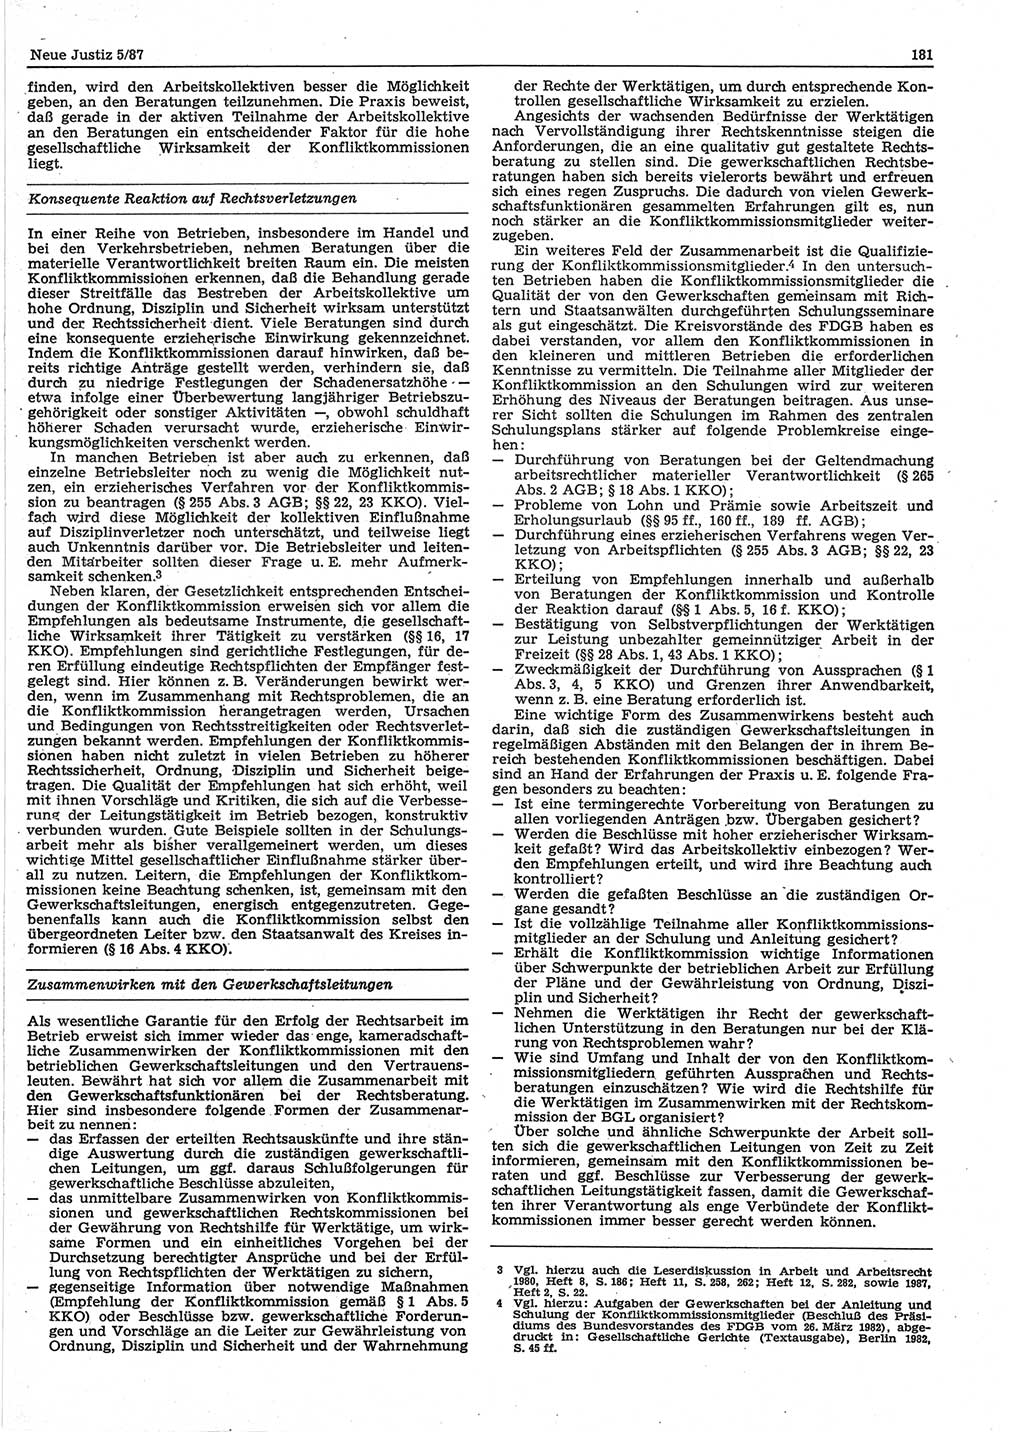 Neue Justiz (NJ), Zeitschrift für sozialistisches Recht und Gesetzlichkeit [Deutsche Demokratische Republik (DDR)], 41. Jahrgang 1987, Seite 181 (NJ DDR 1987, S. 181)